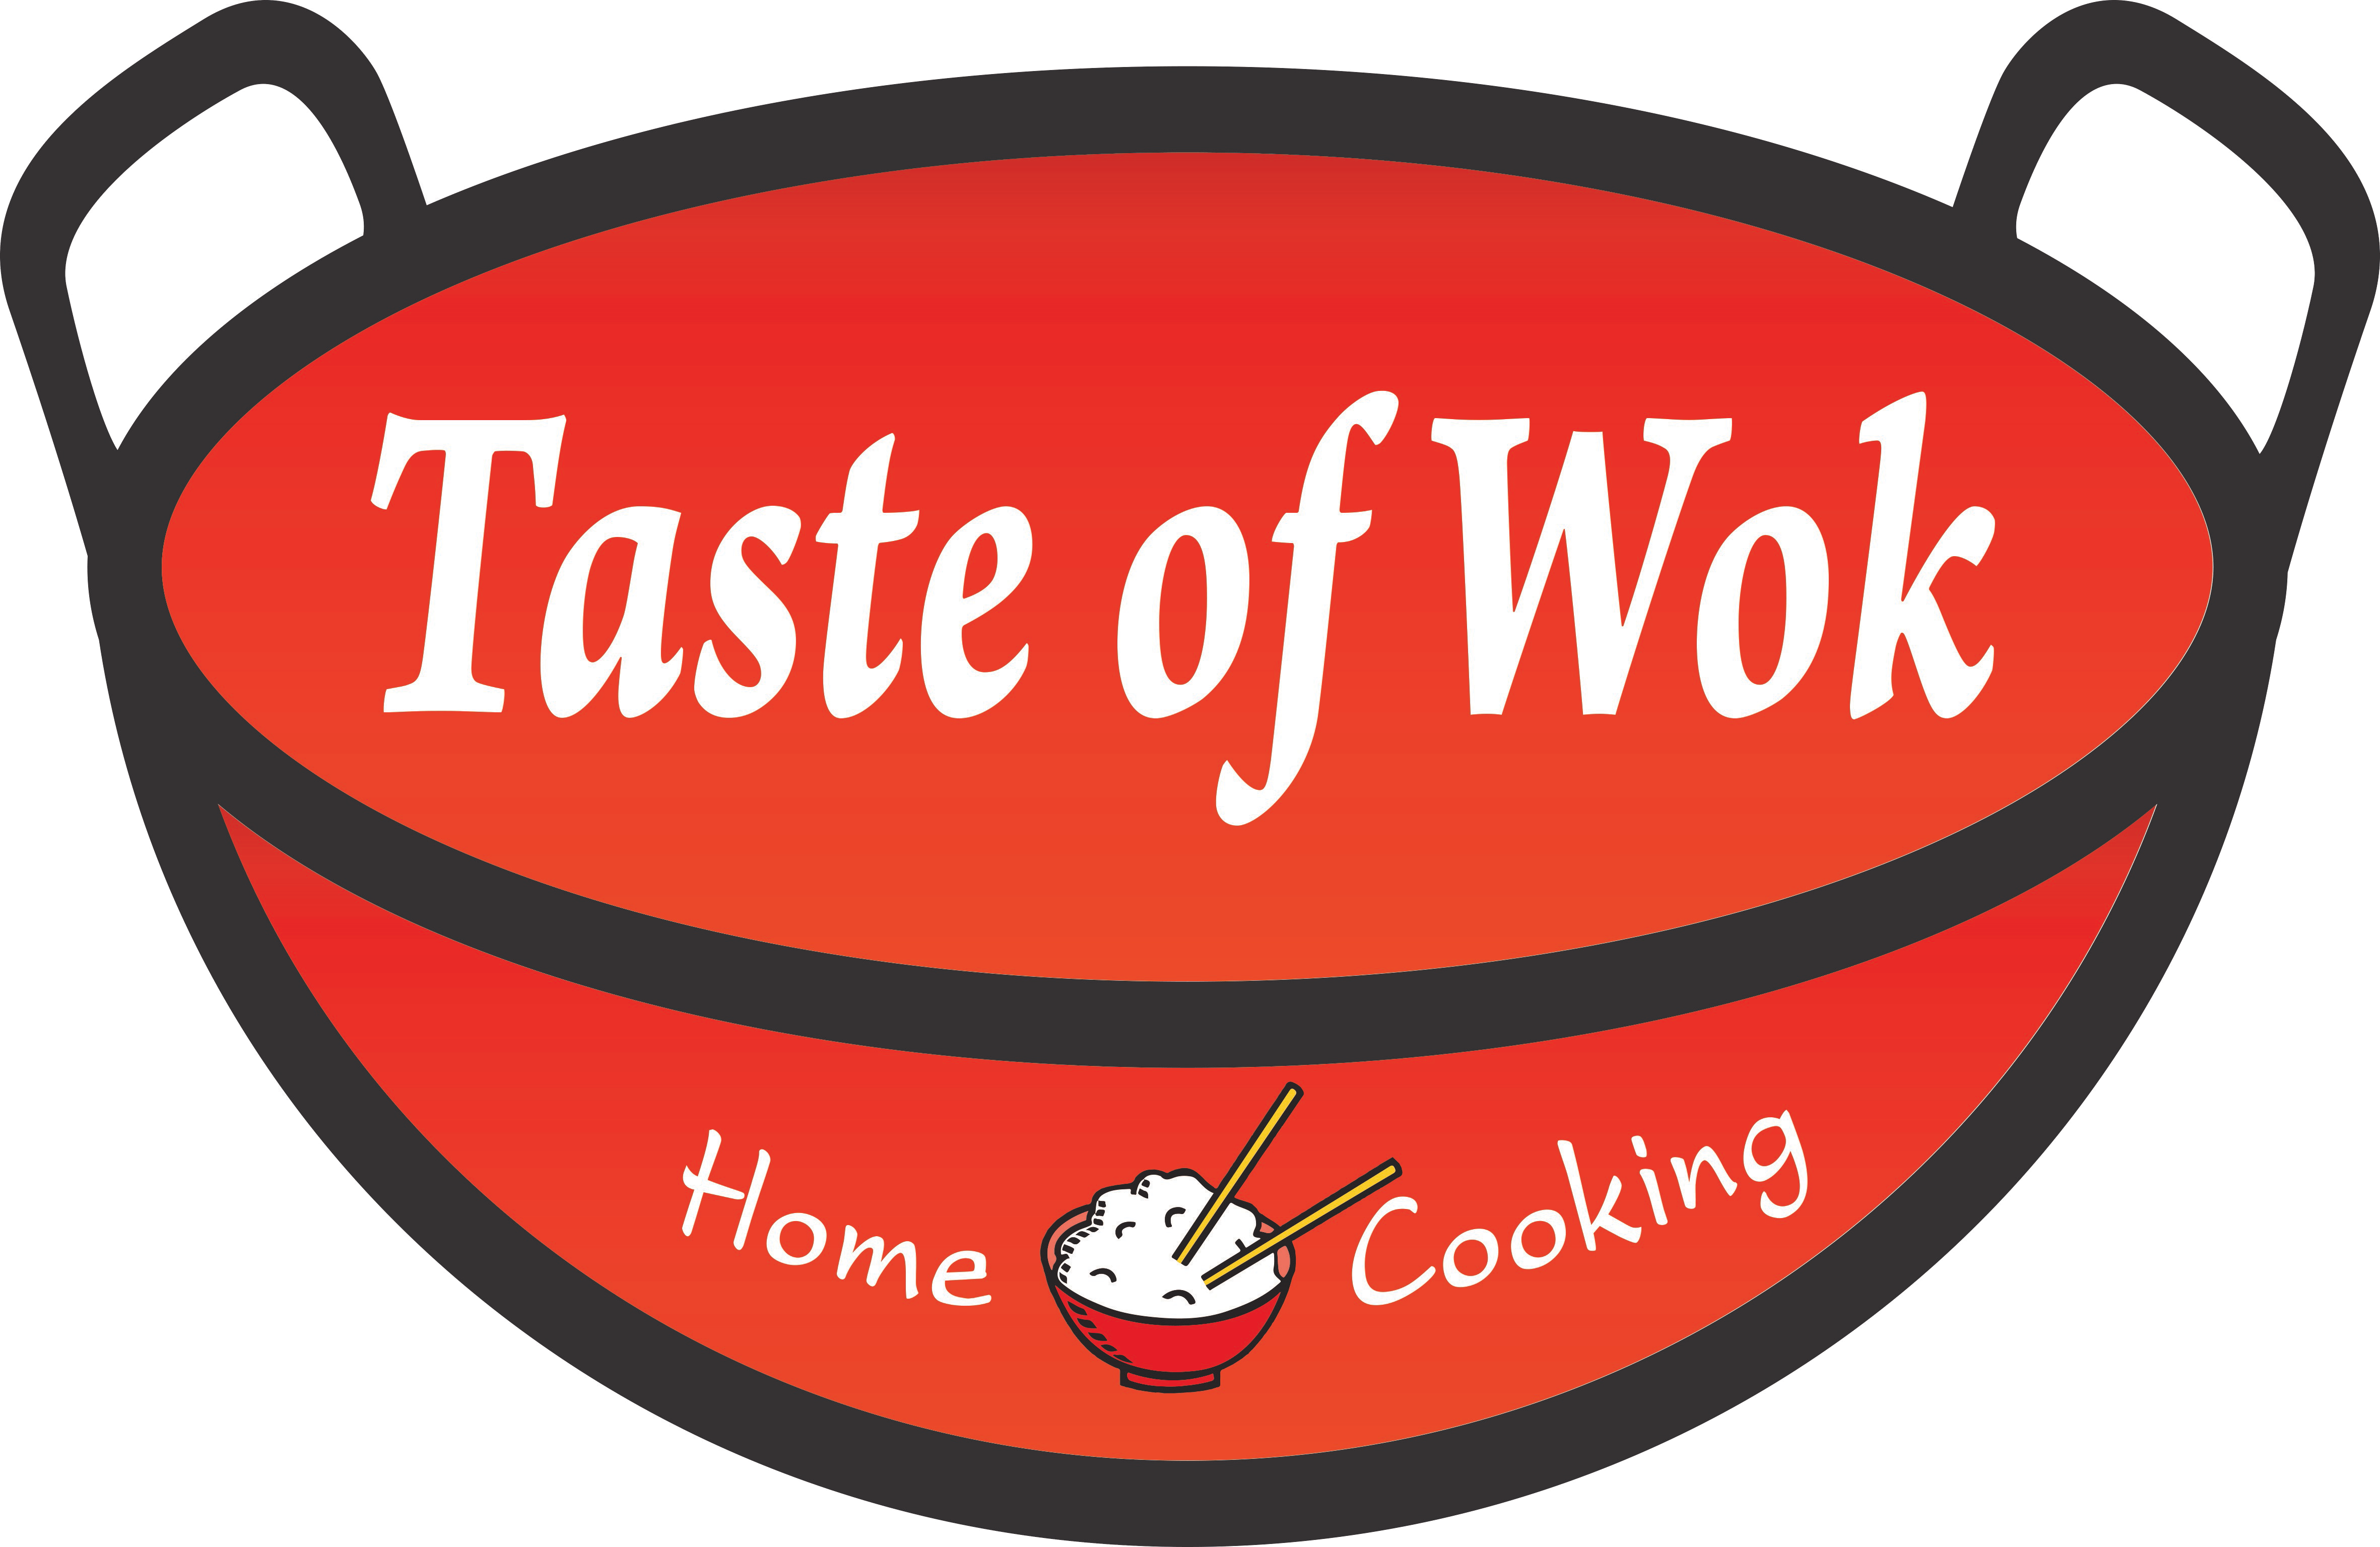 Taste of Wok food truck logo.